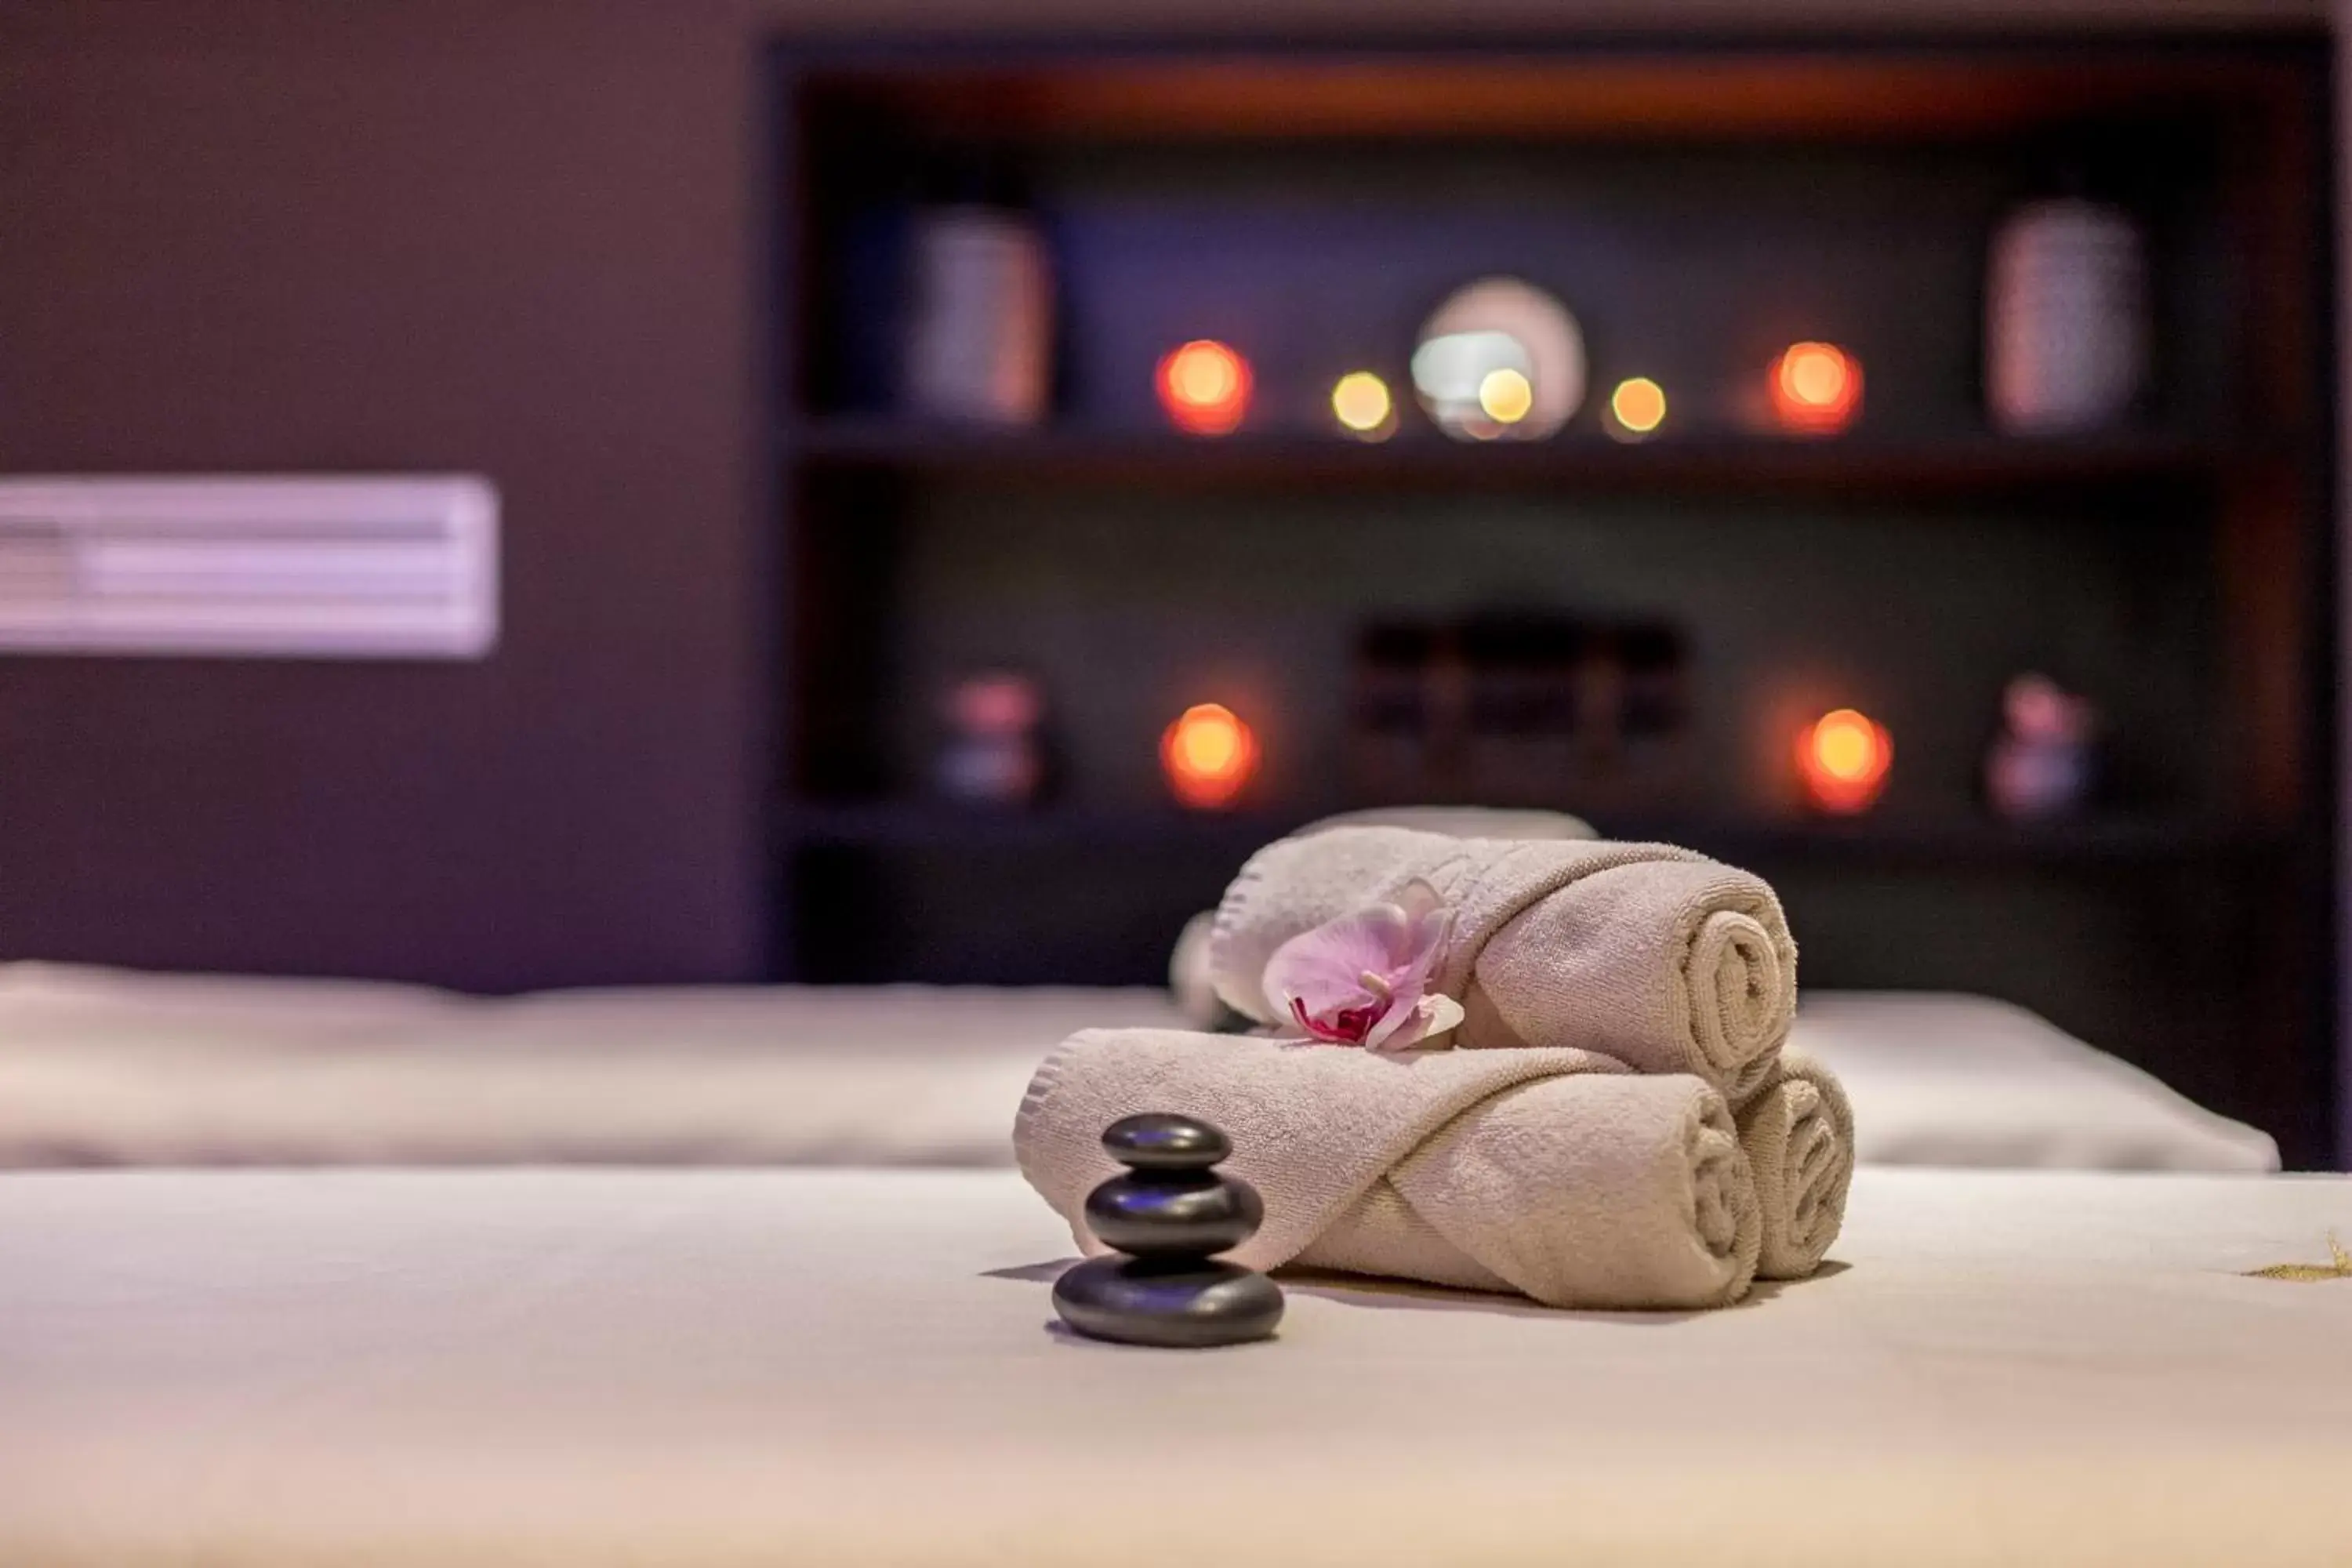 Massage in Cornaro Hotel